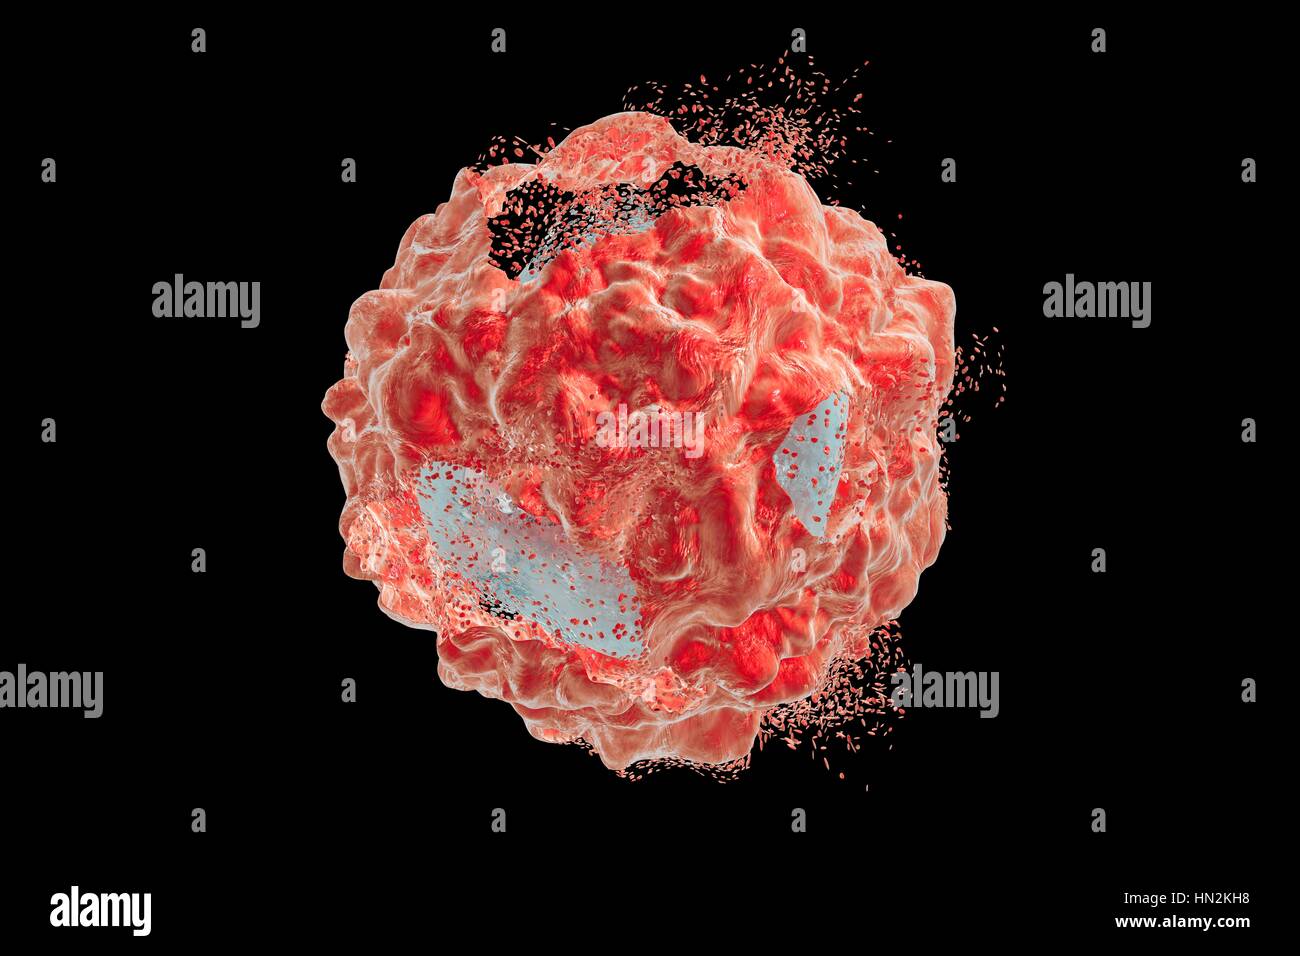 La destruction d'une cellule cancéreuse, illustration de l'ordinateur. Image conceptuelle qui peut illustrer le traitement du cancer par des médicaments, nanoparticules, d'anticorps ou d'autres méthodes. Banque D'Images